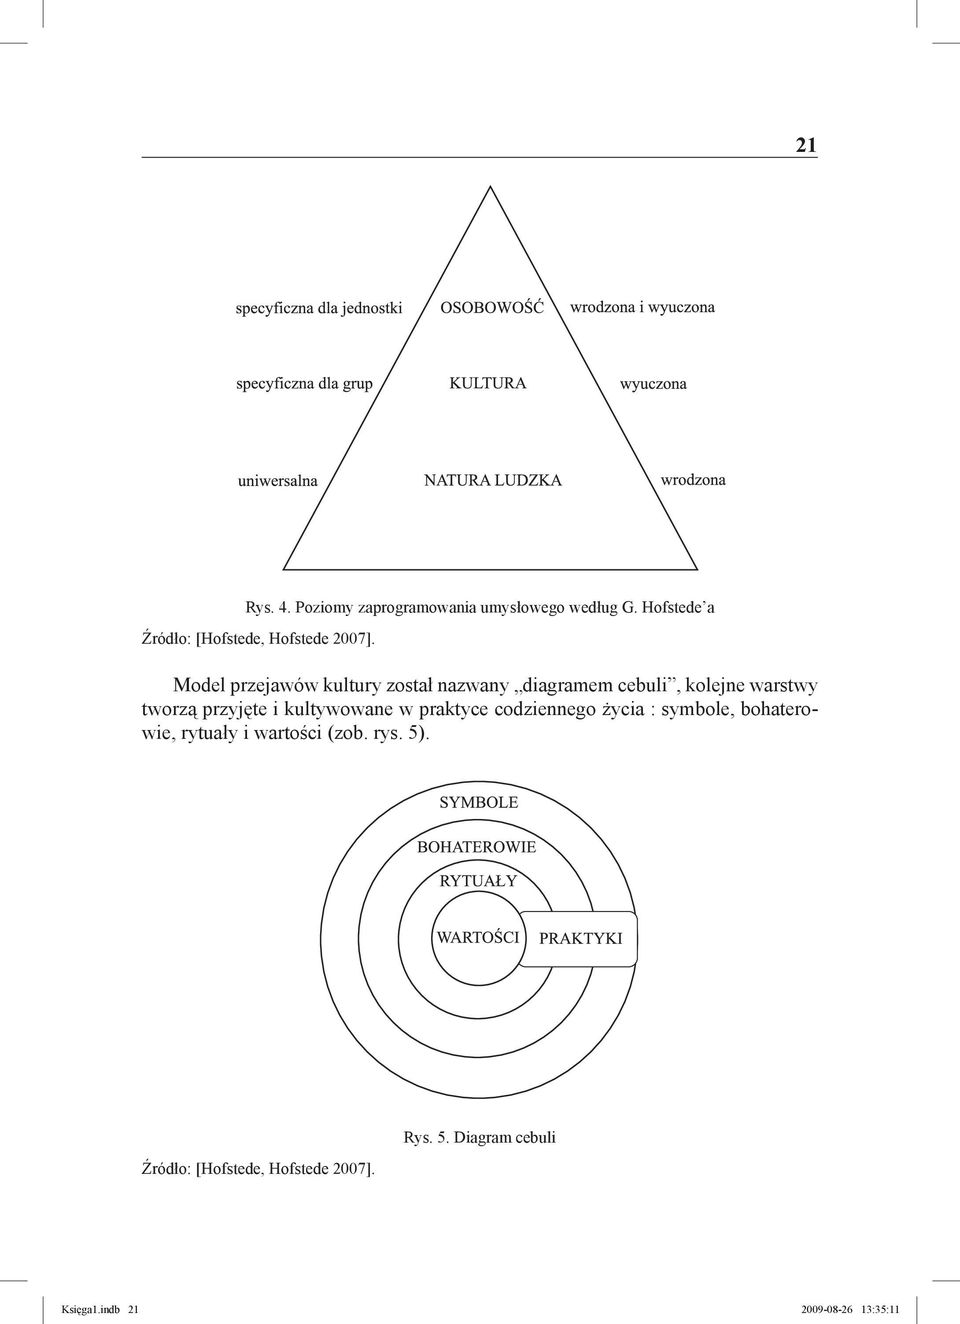 Model przejawów kultury został nazwany diagramem cebuli, kolejne warstwy tworzą przyjęte i